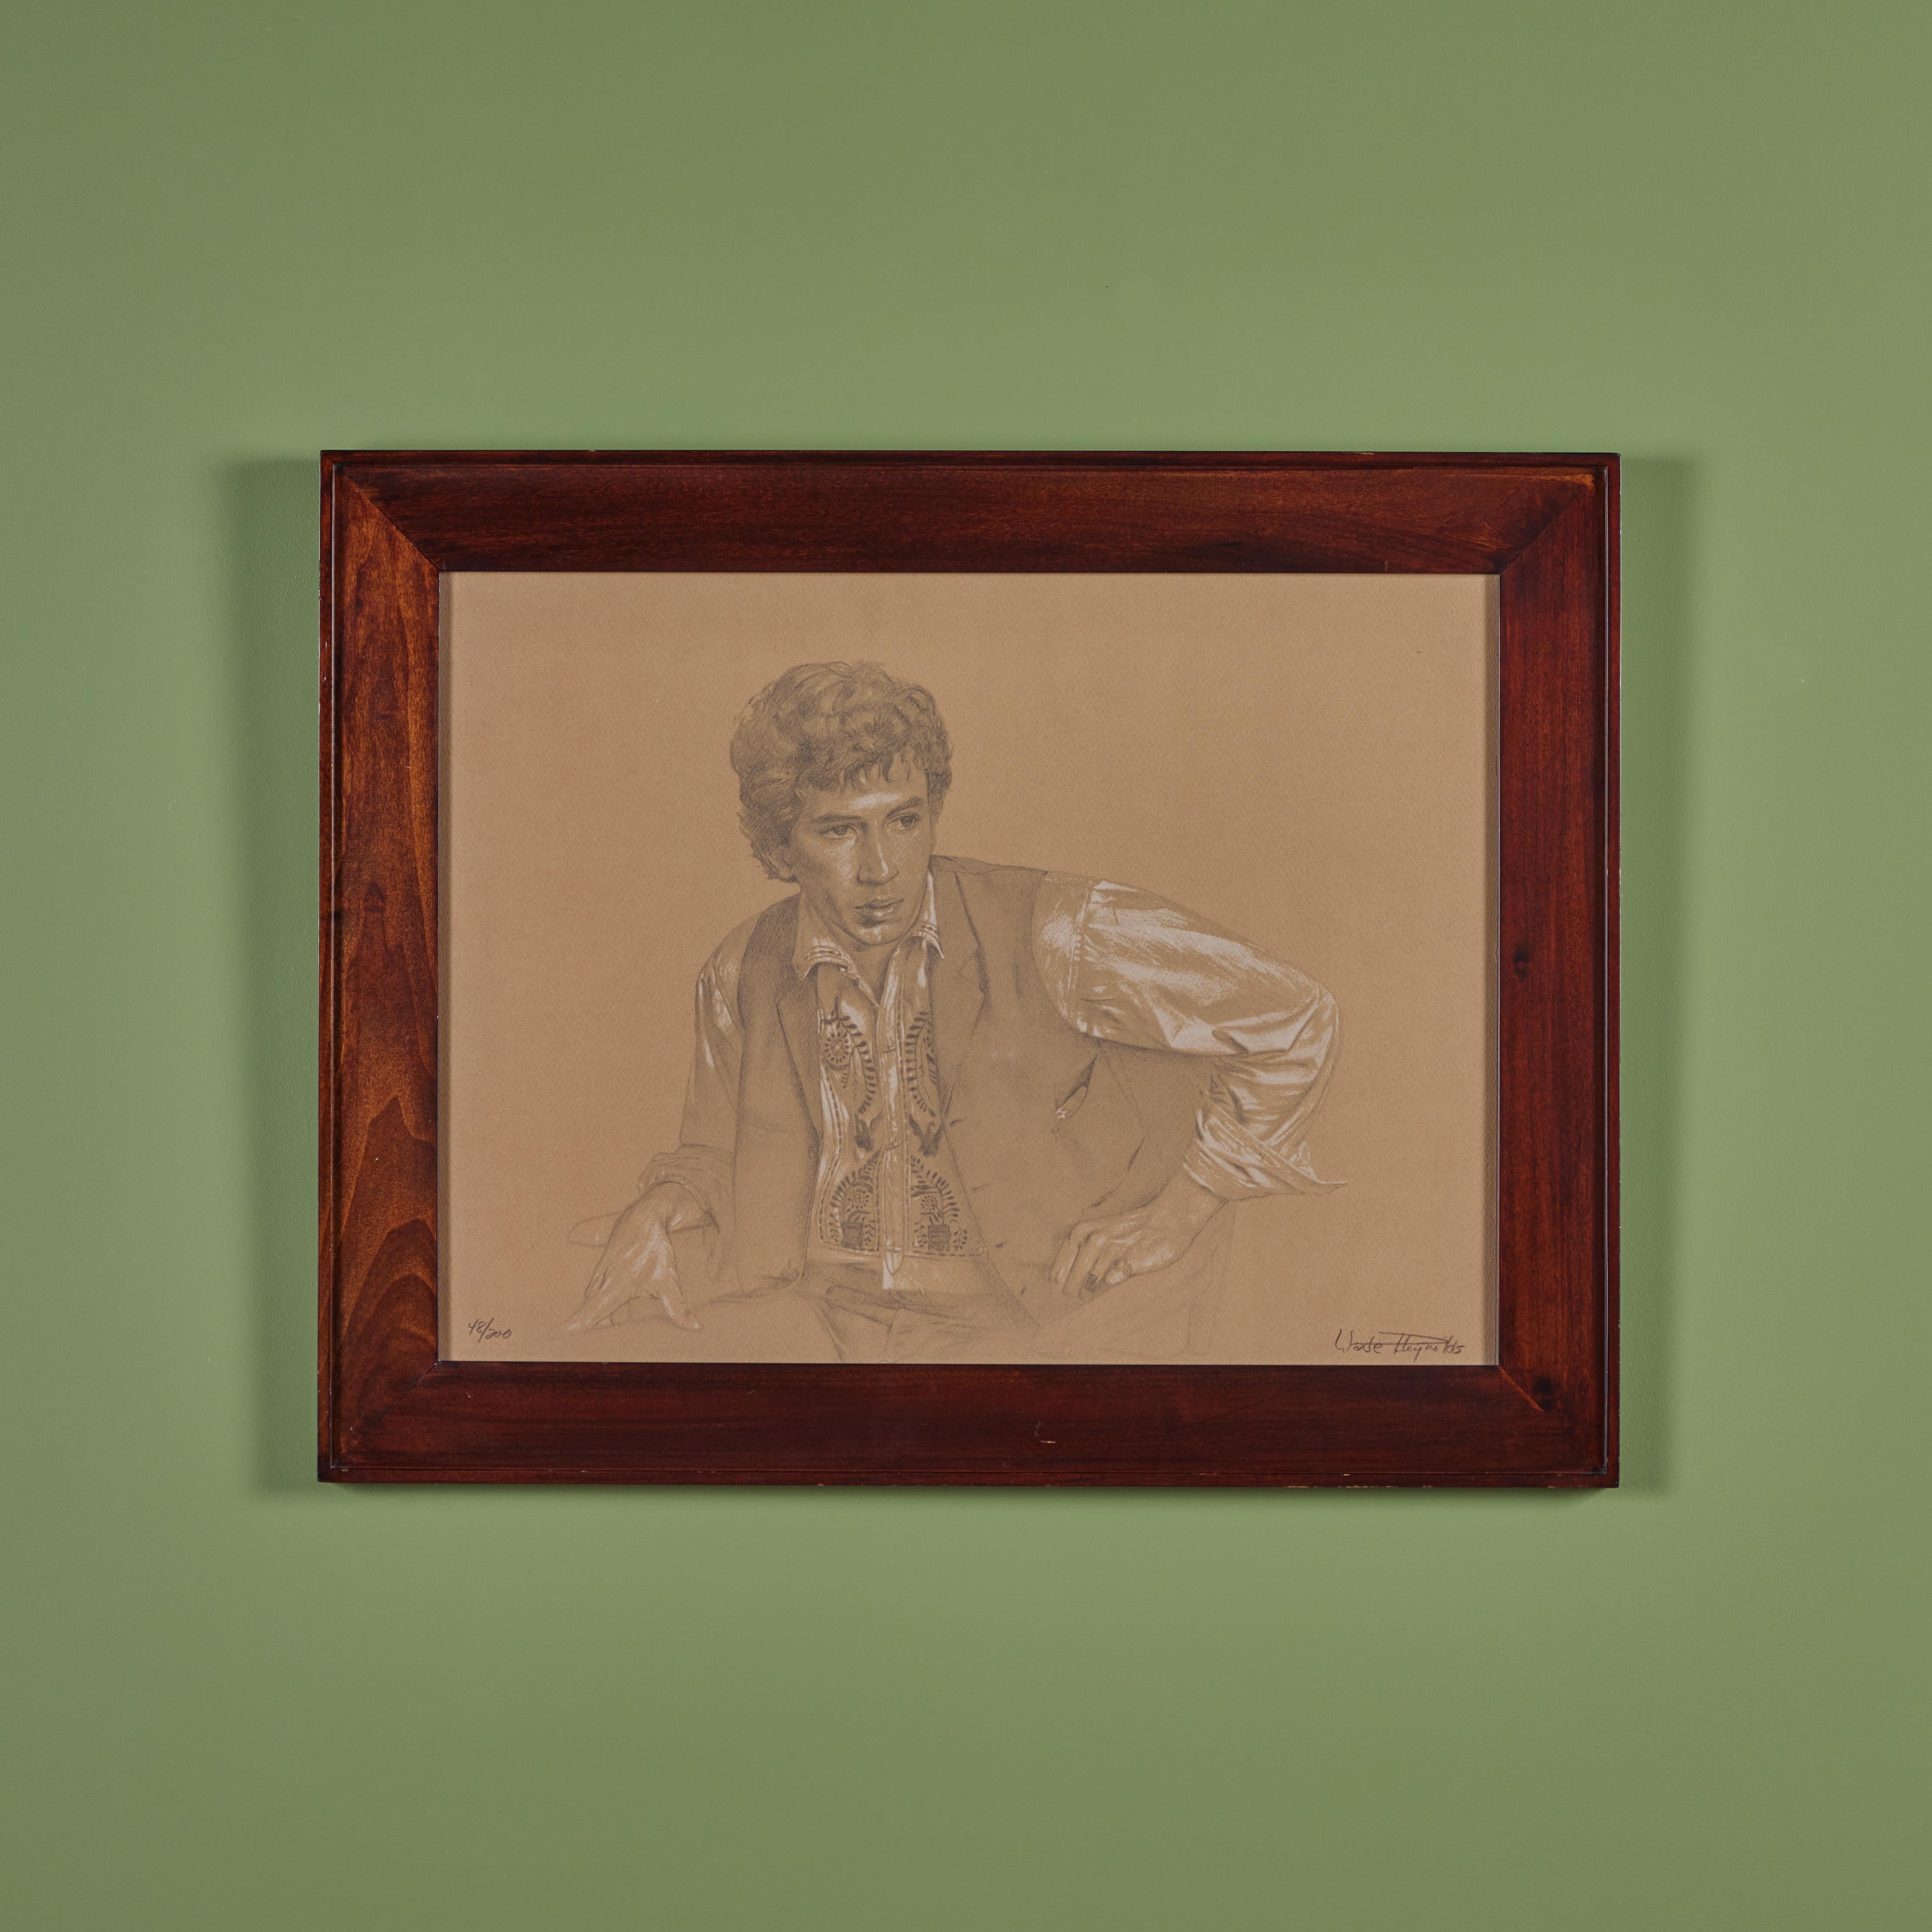 Zeichnung des amerikanischen Künstlers Wade Reynolds. Er ist vor allem für seine figürlichen Gemälde und Zeichnungen bekannt, und dieses Werk entspricht genau seinem Stil. Das Porträt eines Mannes auf Papier mit Bleistift. Signiert vom